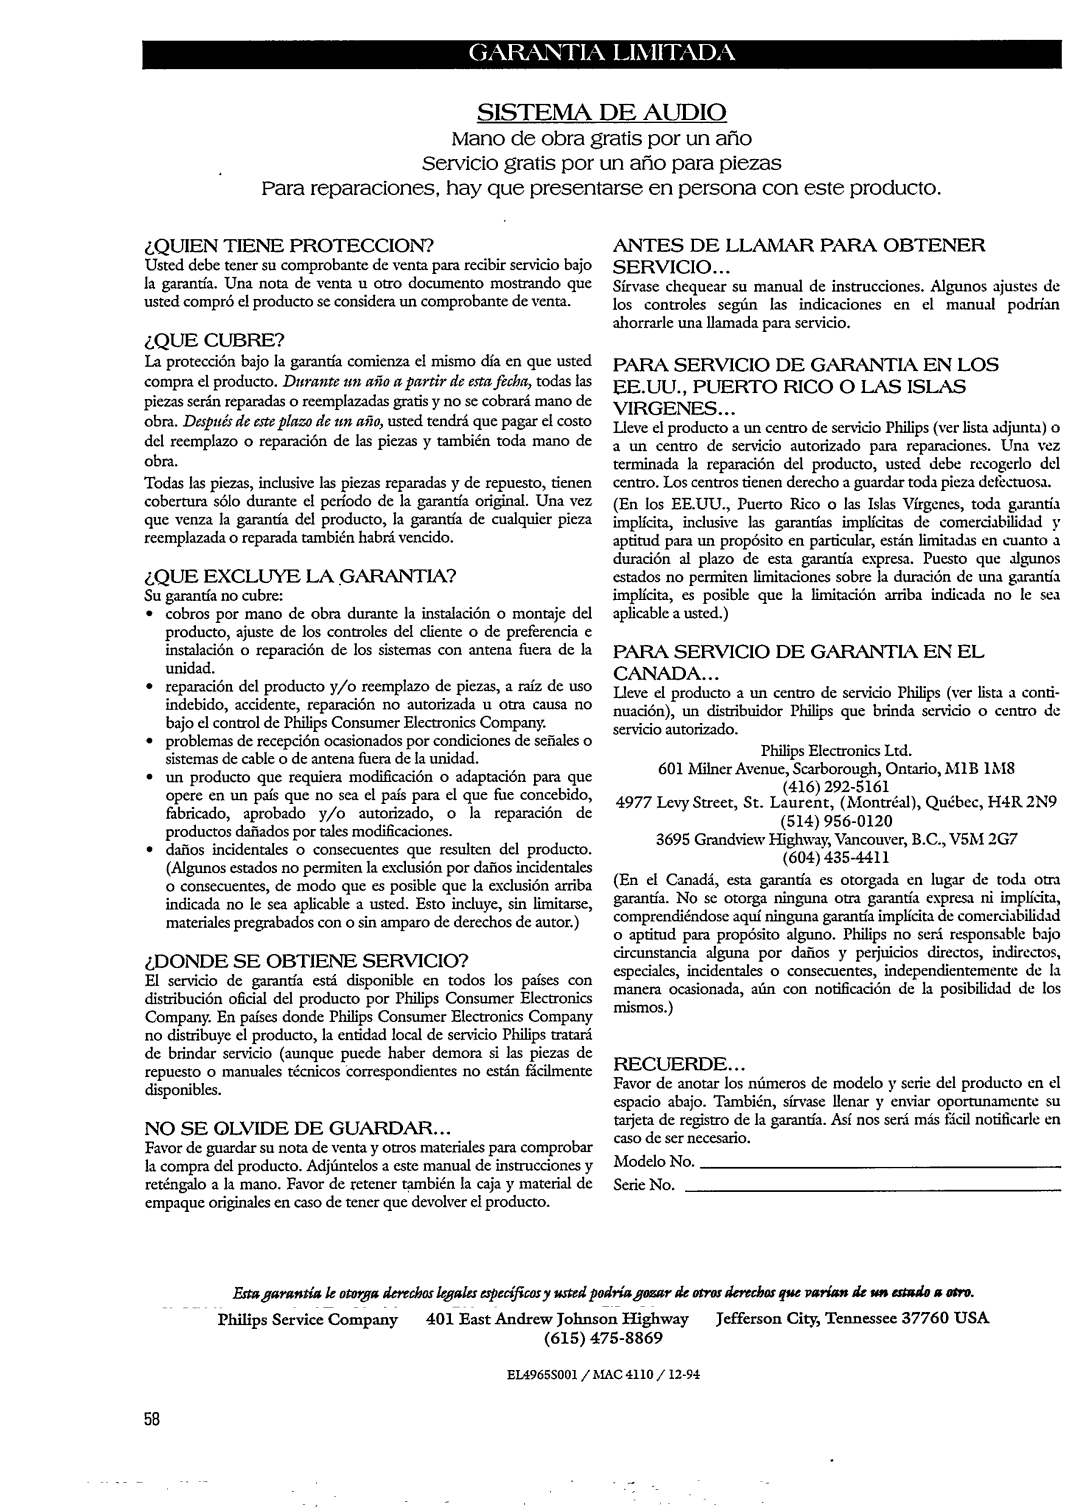 Philips FW620C manual 